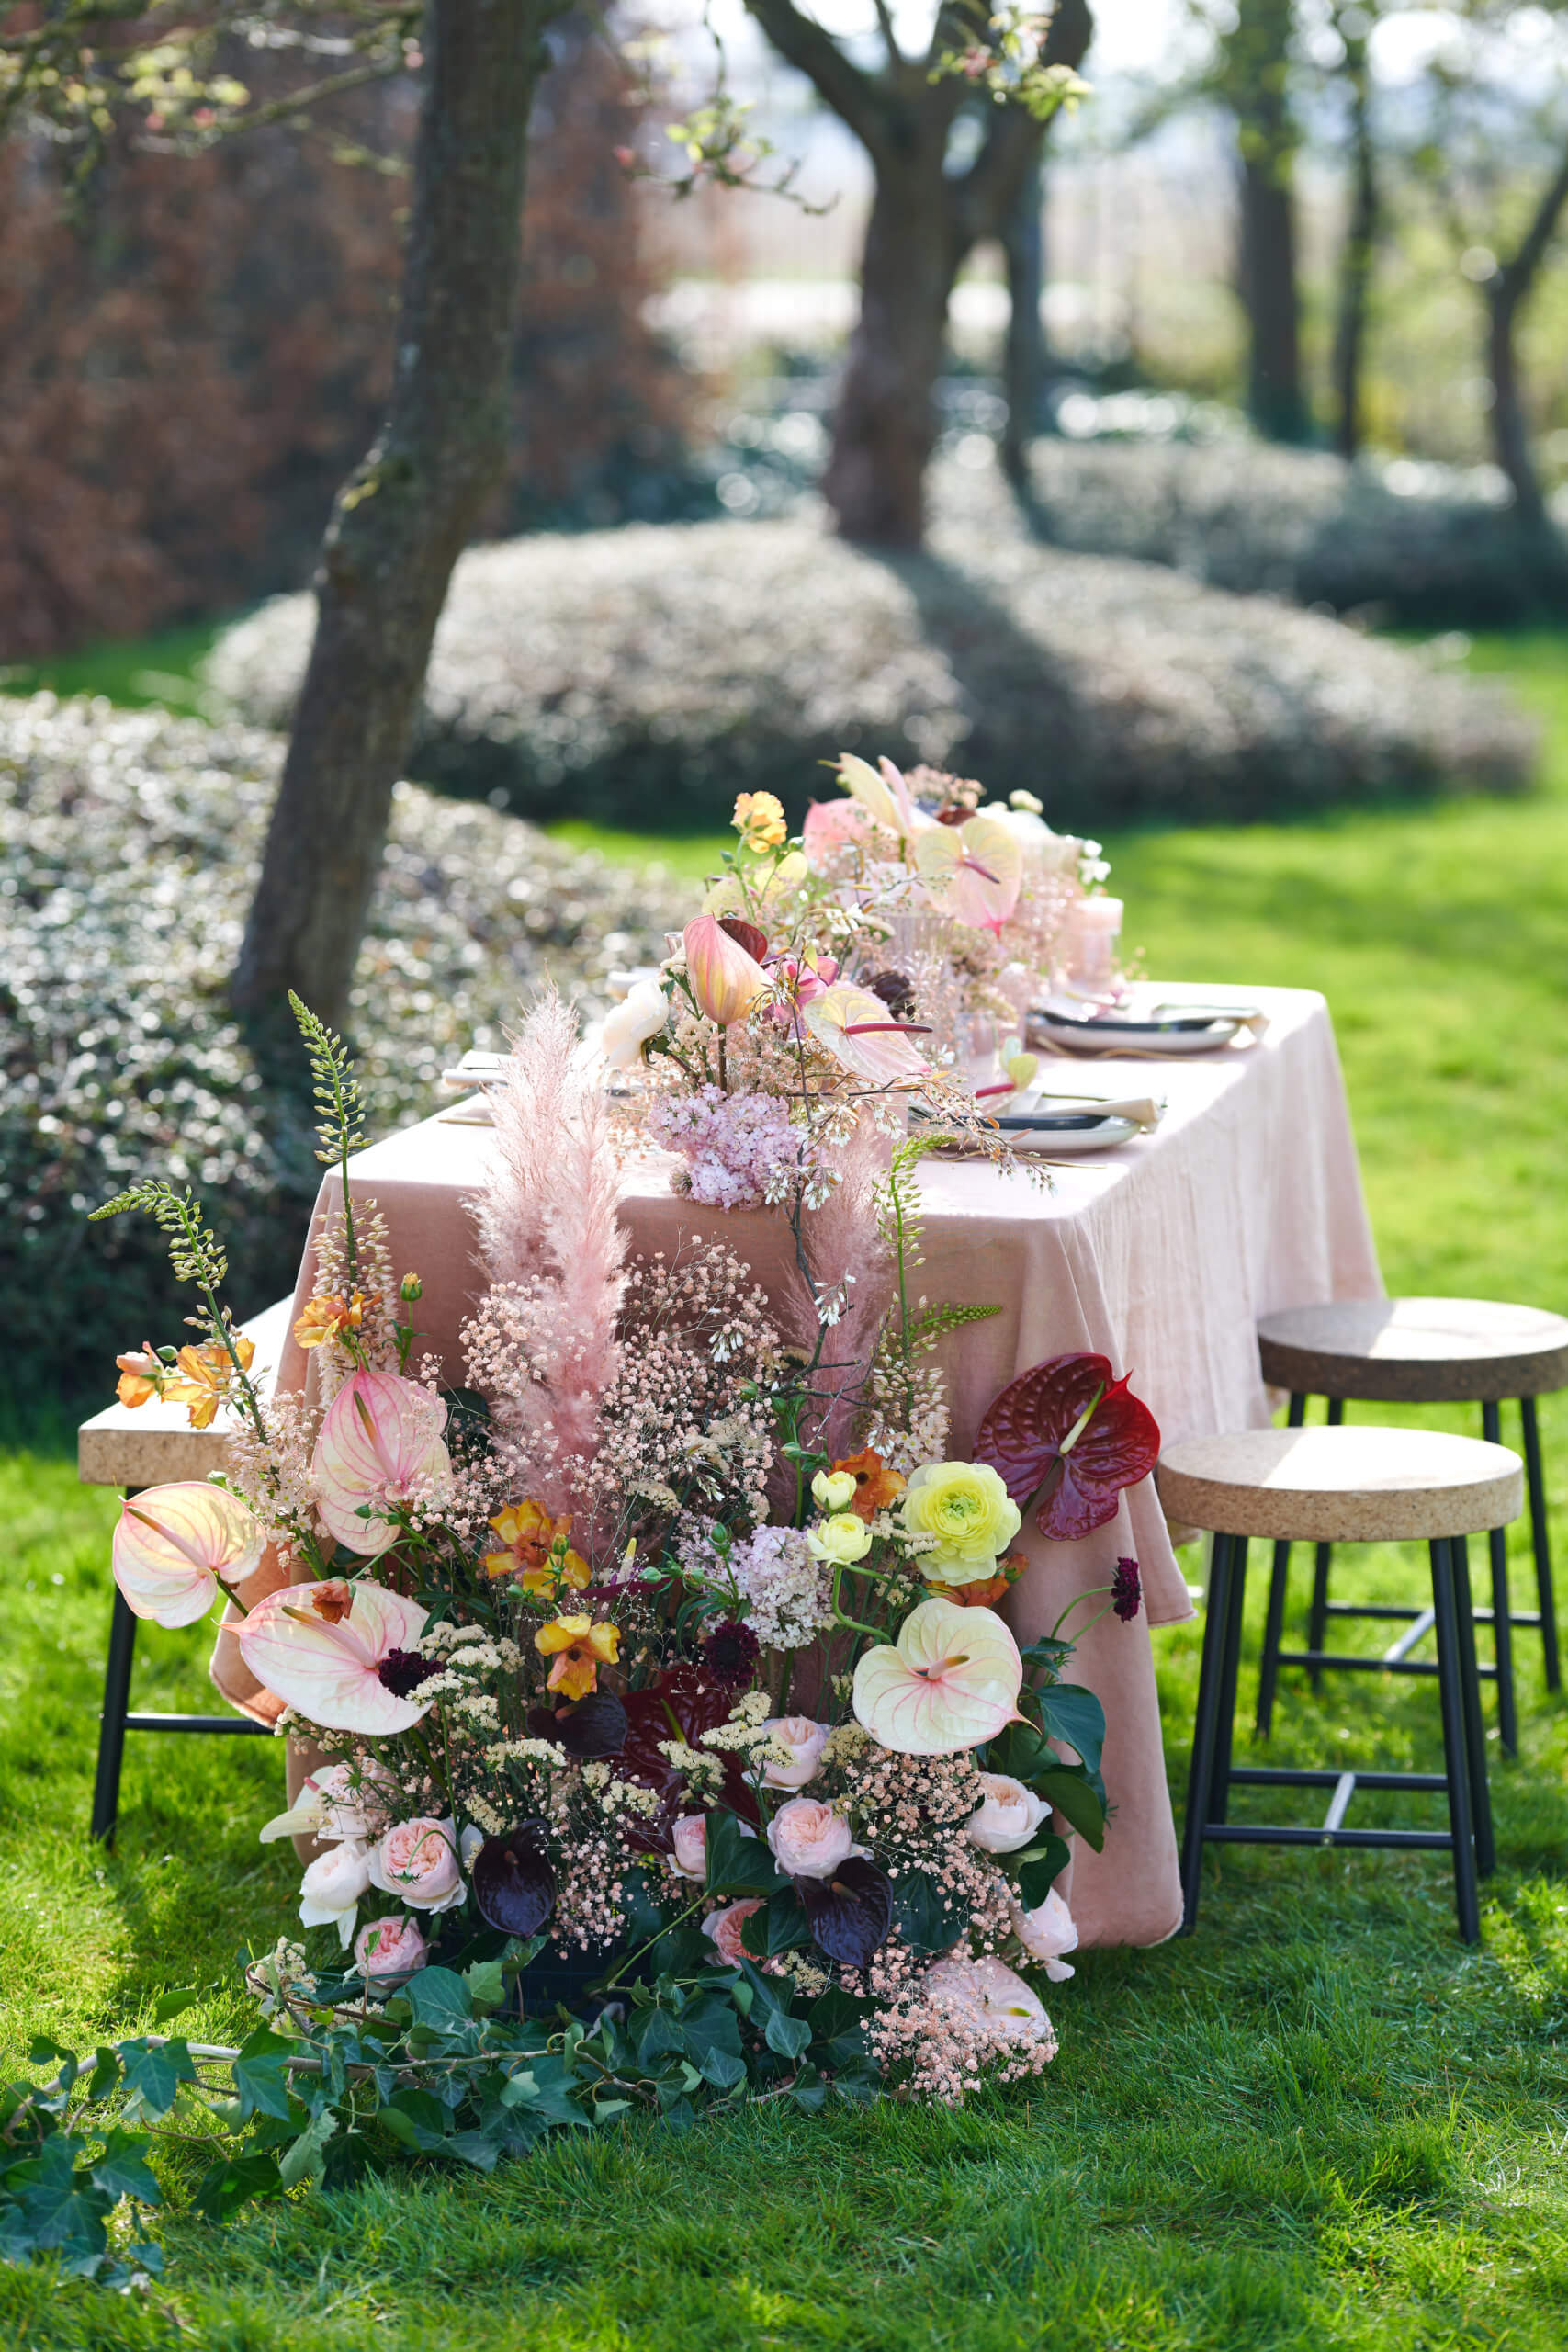 Bloemstuk inspiratie: bruiloft decoratie met anthurium bloemen